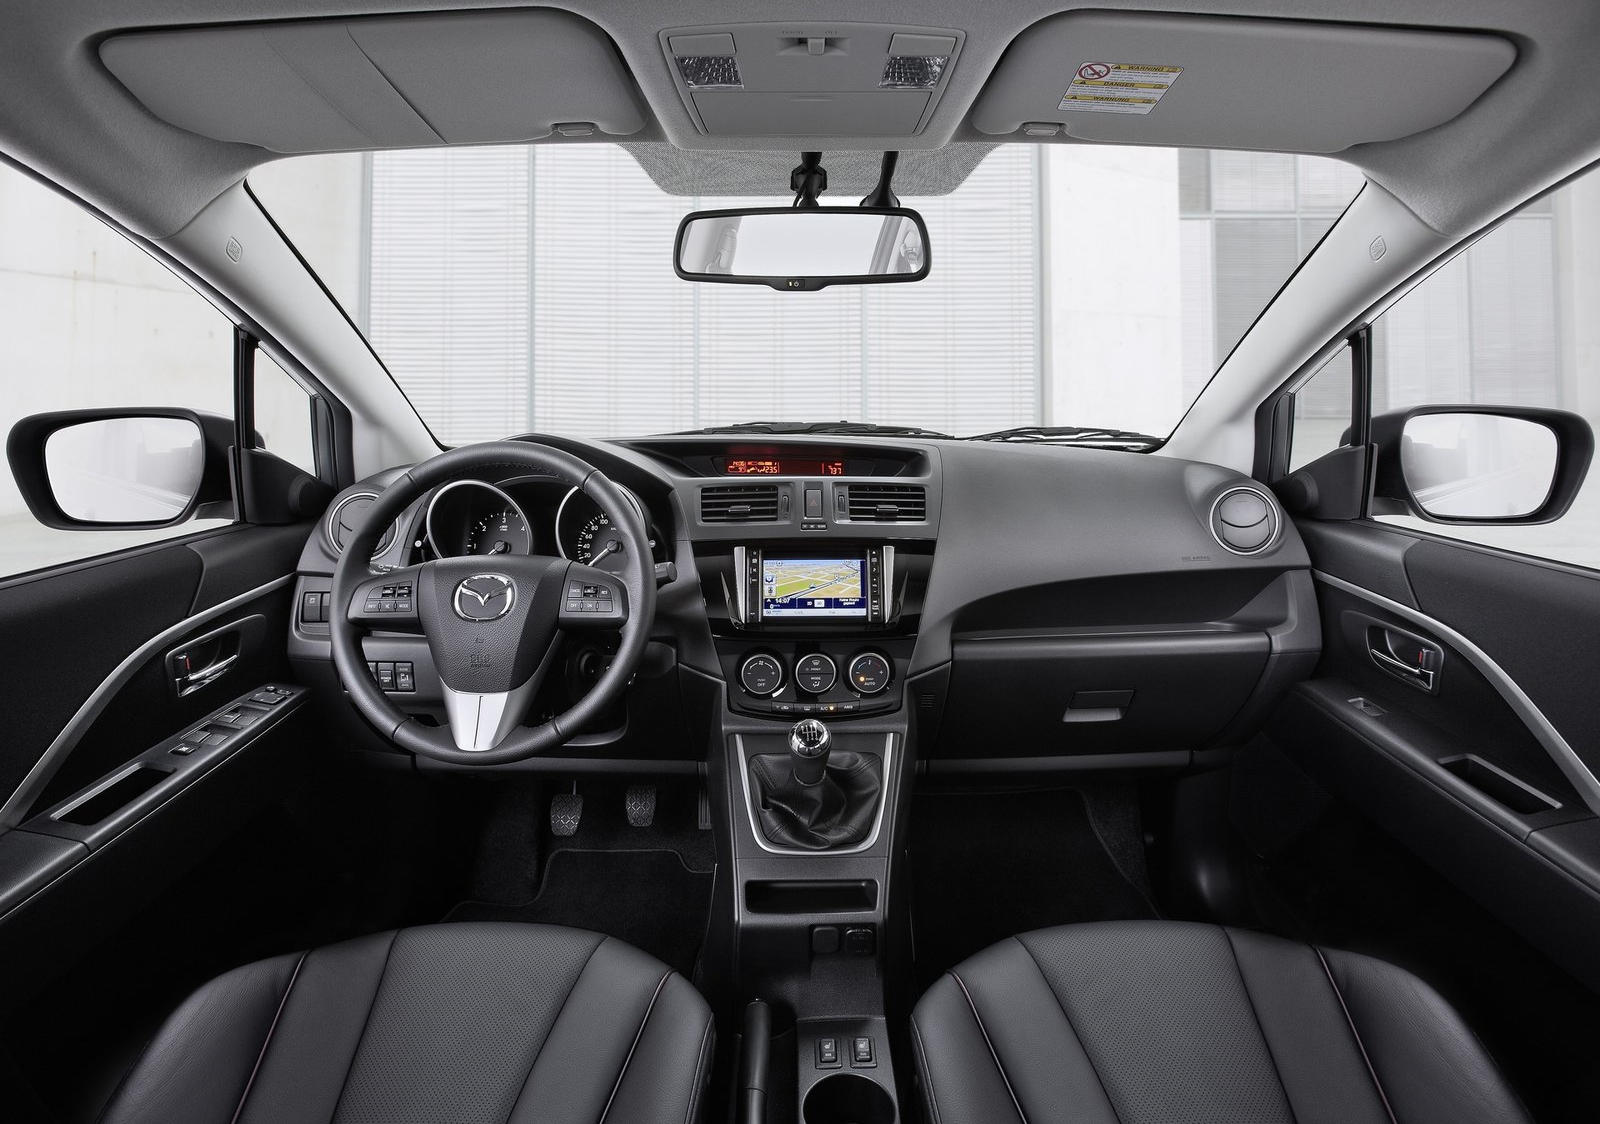 2013 Mazda 5 Interior Photos | CarBuzz